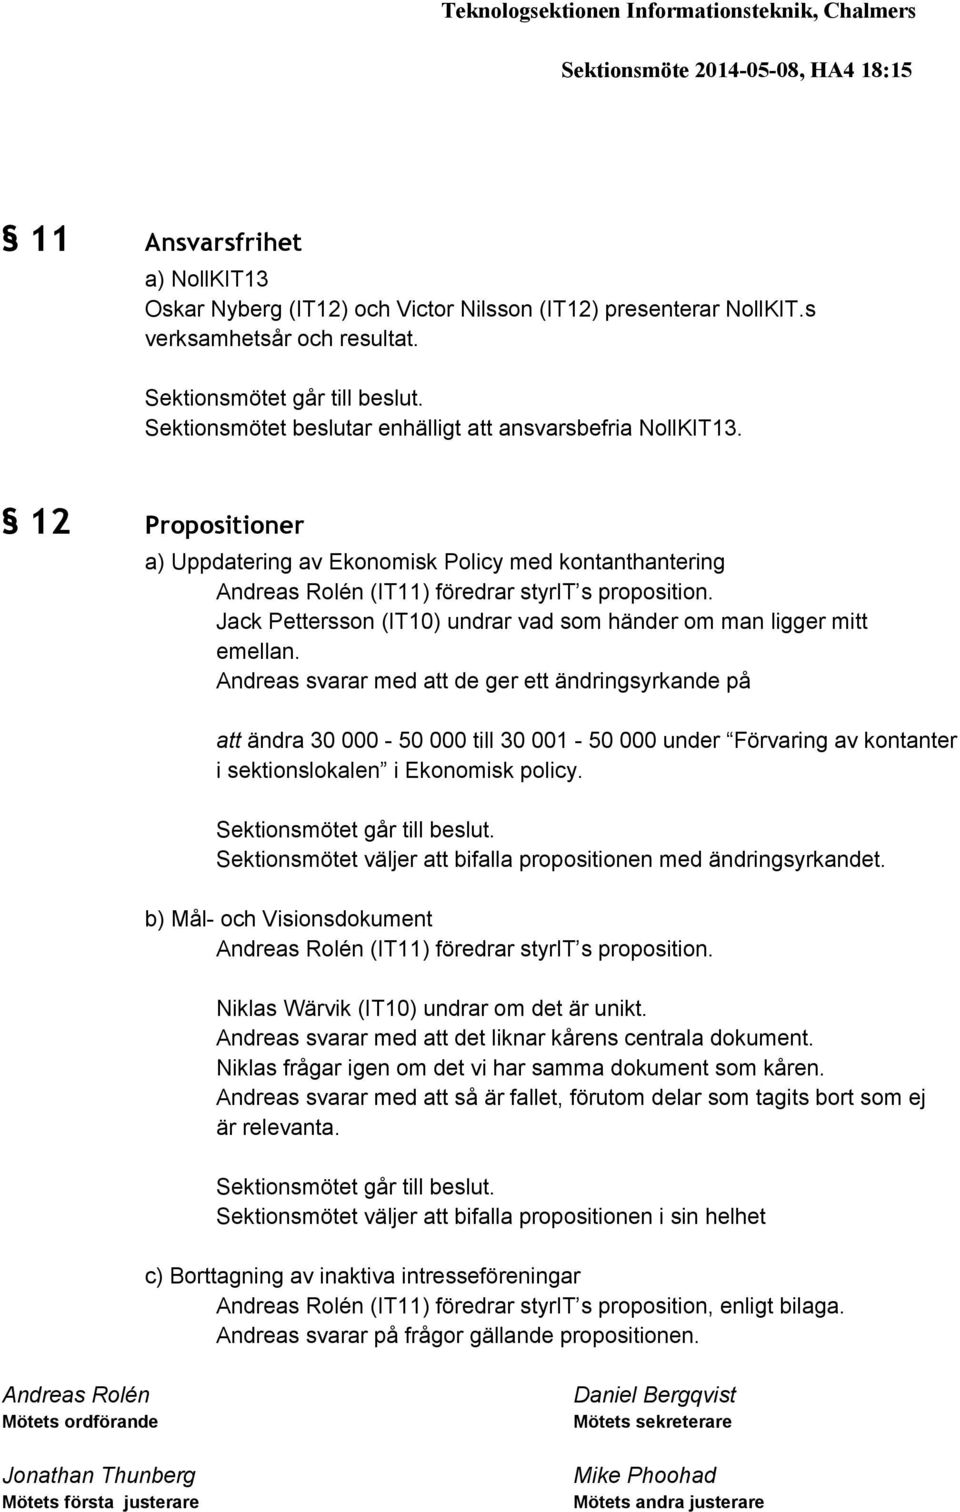 12 Propositioner a) Uppdatering av Ekonomisk Policy med kontanthantering Andreas Rolén (IT11) föredrar styrit s proposition. Jack Pettersson (IT10) undrar vad som händer om man ligger mitt emellan.